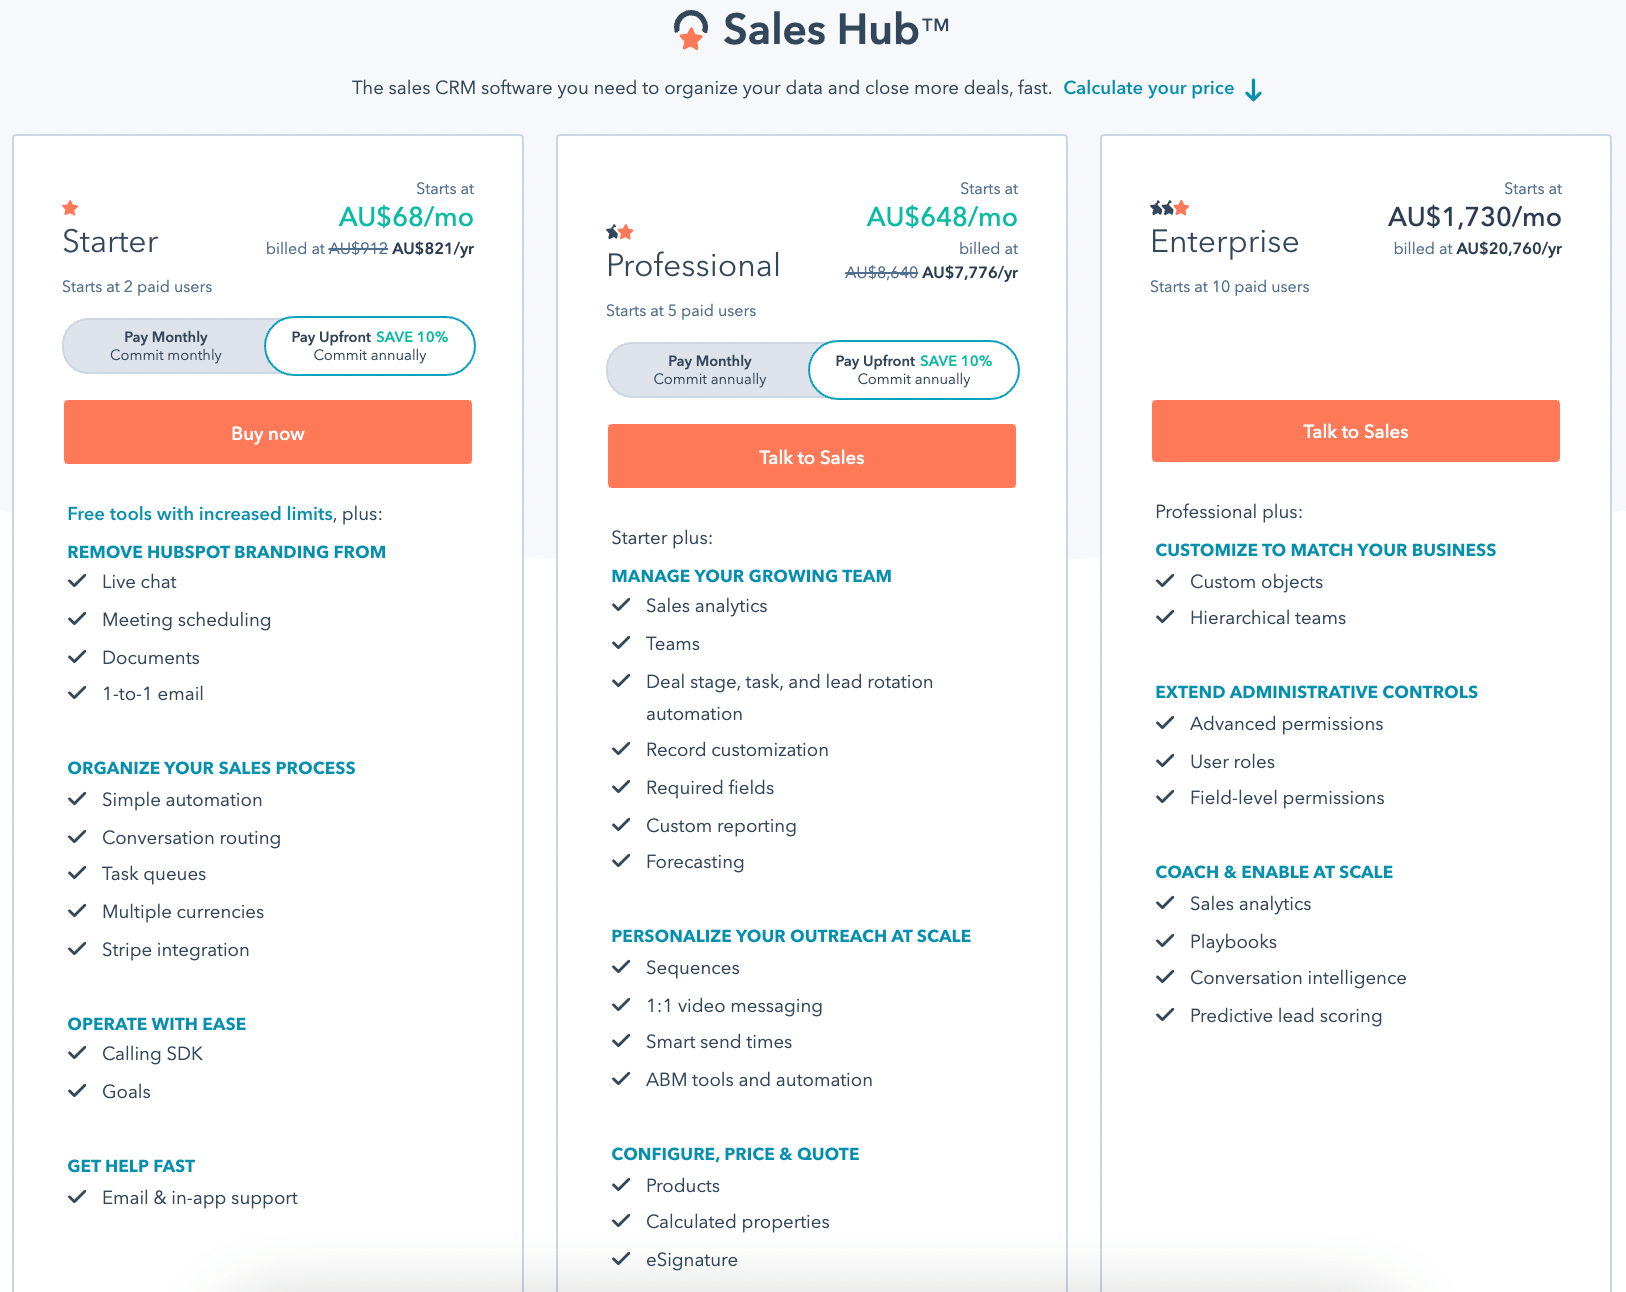 HubSpot Sales Hub inclusions